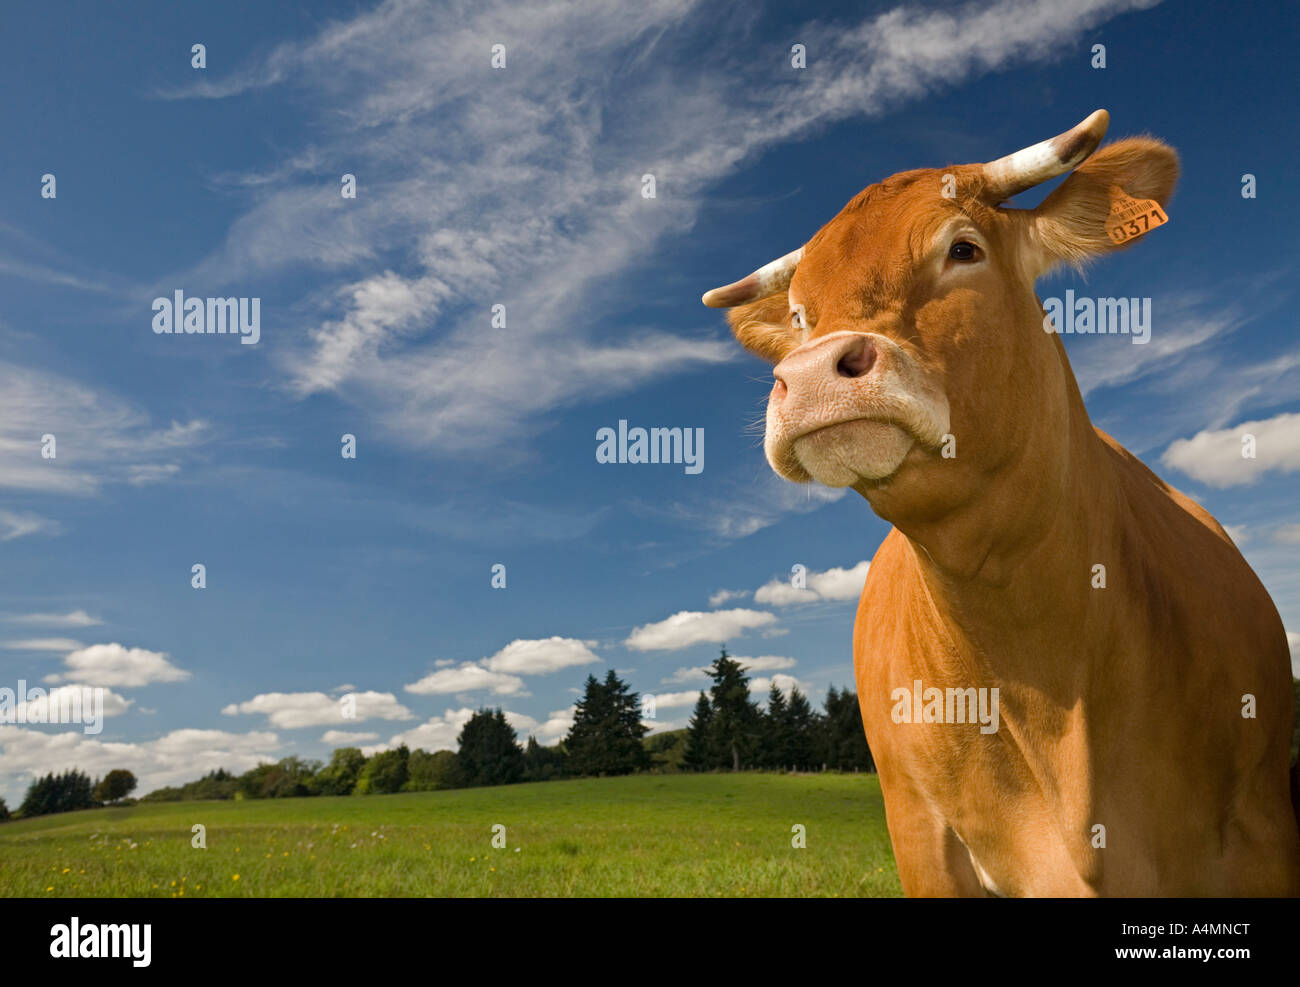 A Limousin cow (Bos taurus domesticus) on a meadow (Haute-Vienne - France). Vache de race Limousine dans un pré (France). Stock Photo